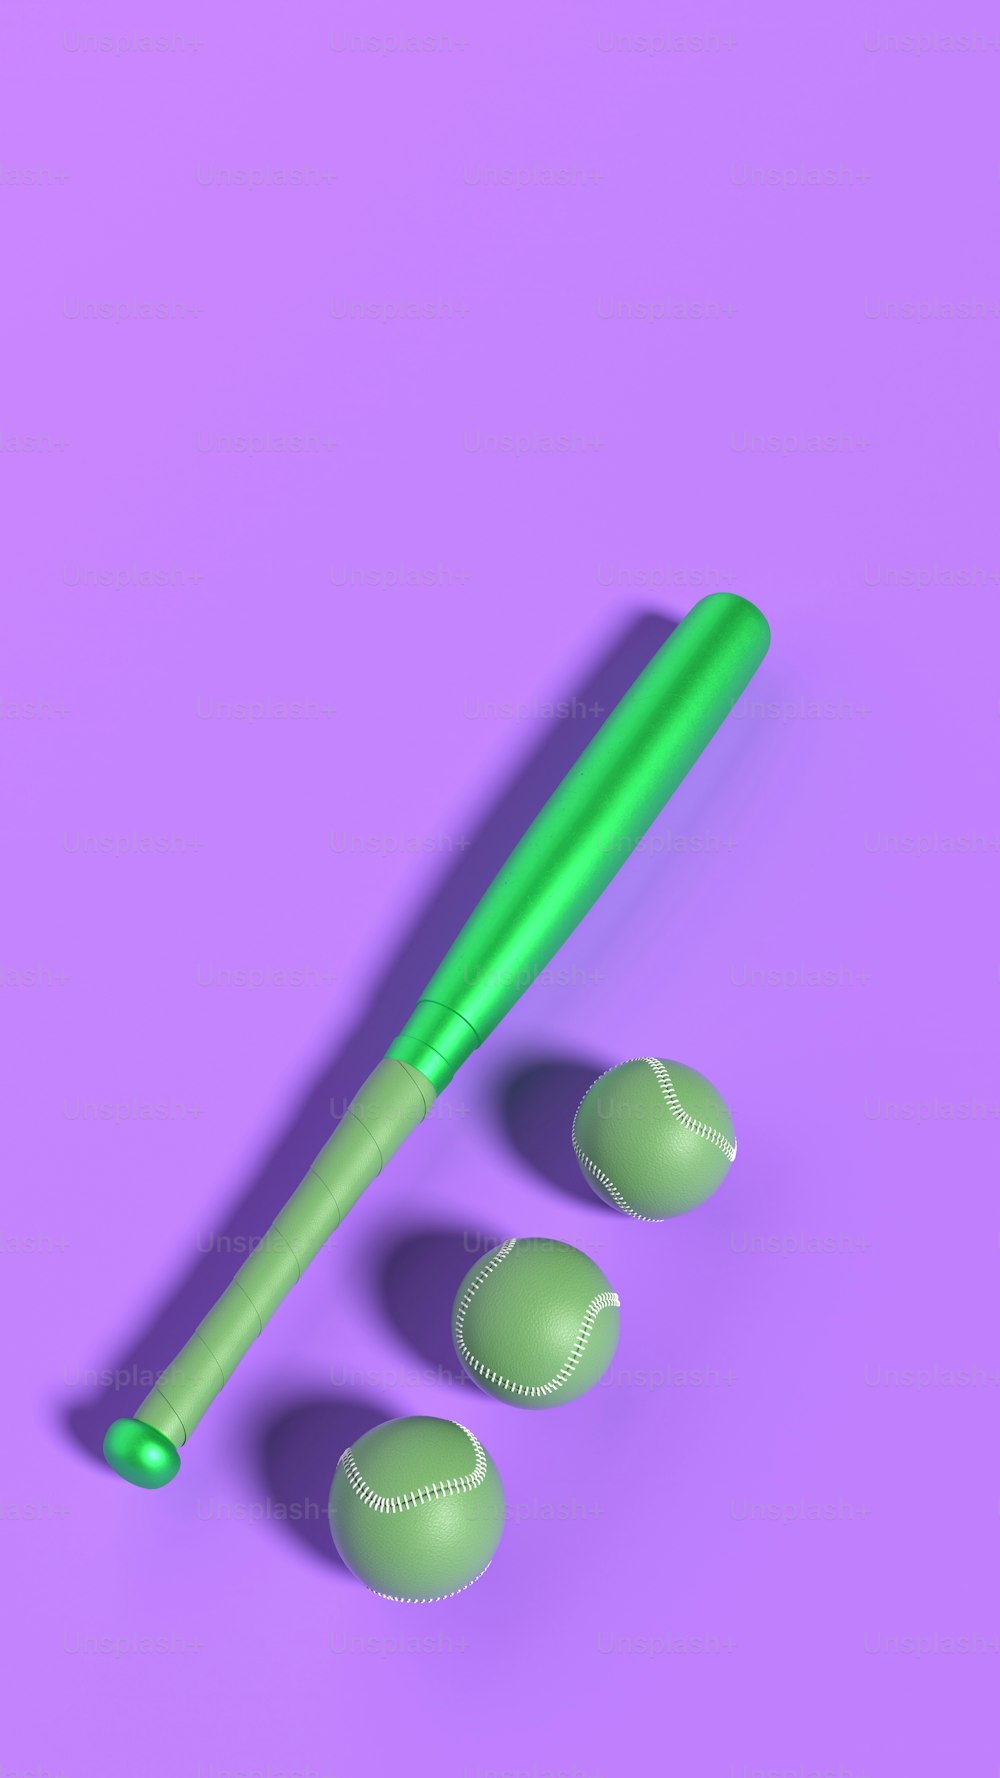 3つの緑色のプラスチックキャップの横にある緑色のプラスチック製の野球バット